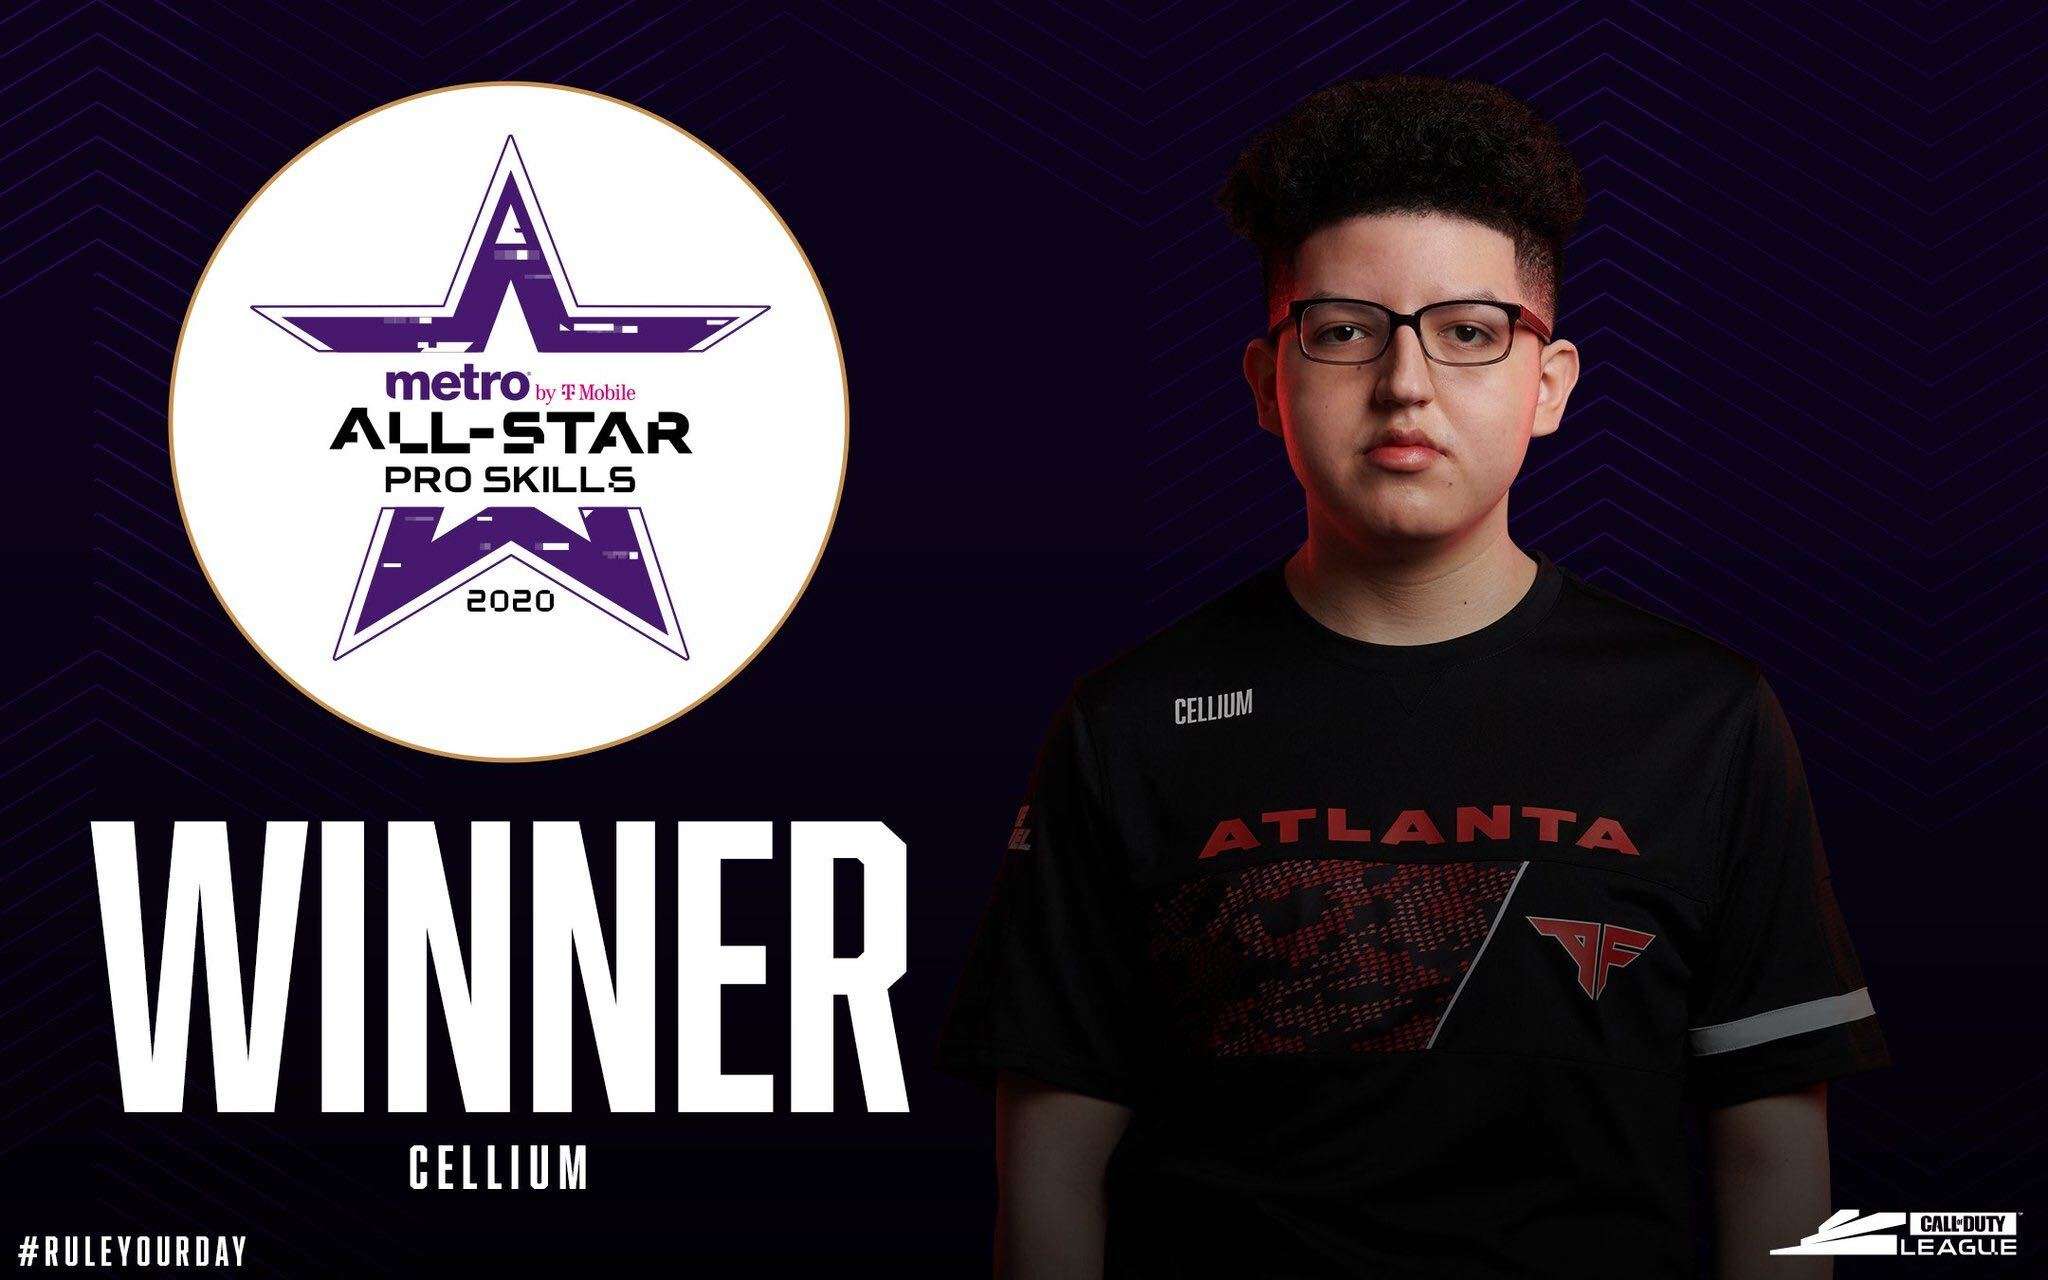 Cellium wins All Star 1v1